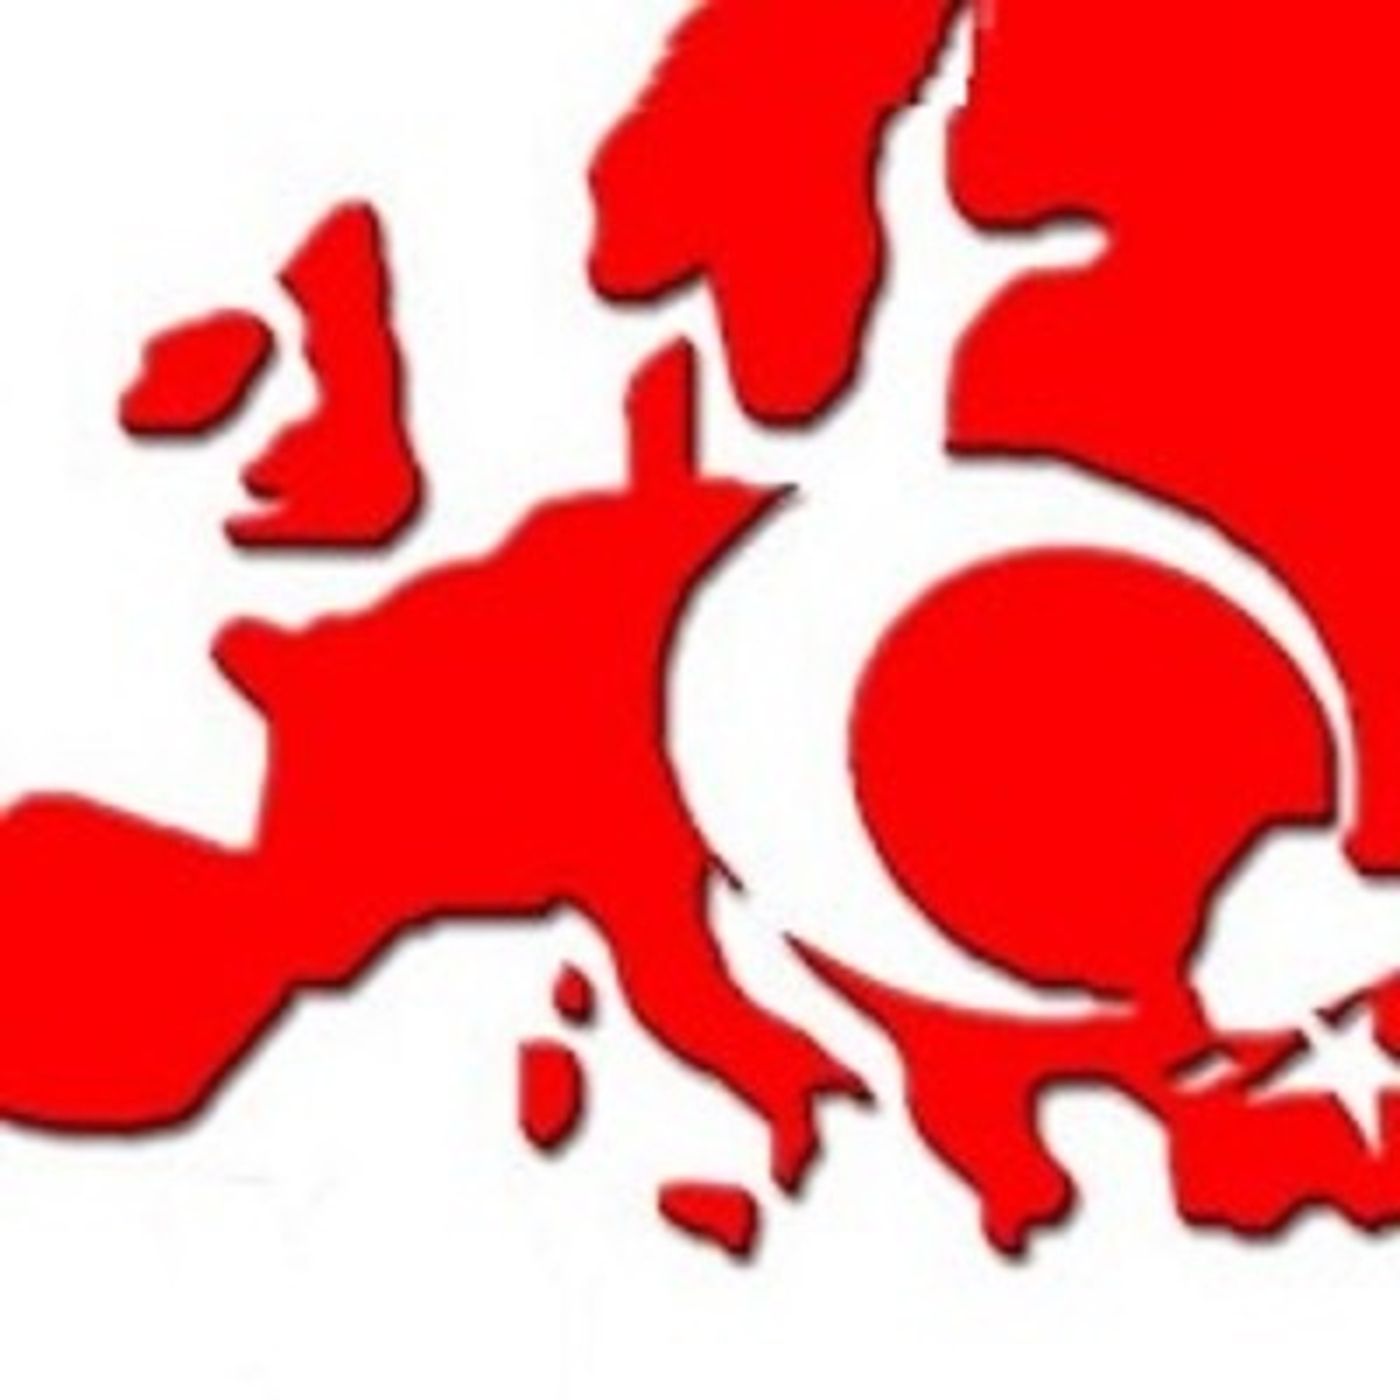 All'islam piace l'Europa e... vuole conquistarla a tutti i costi